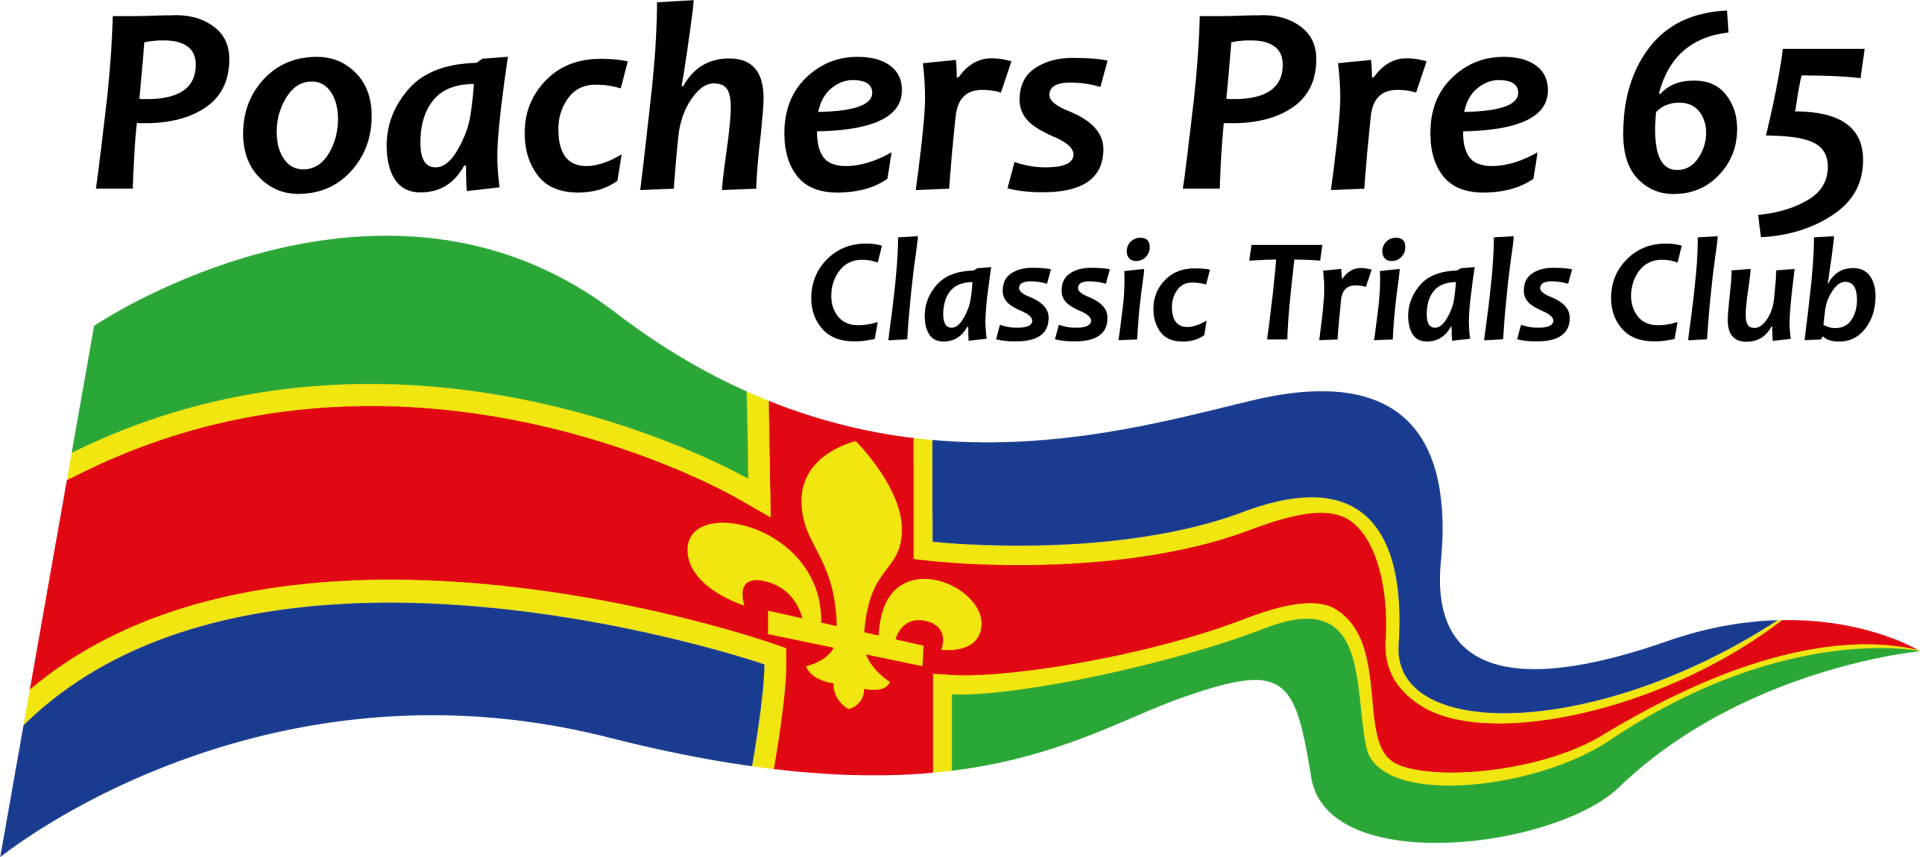 Poachers Pre65 logo